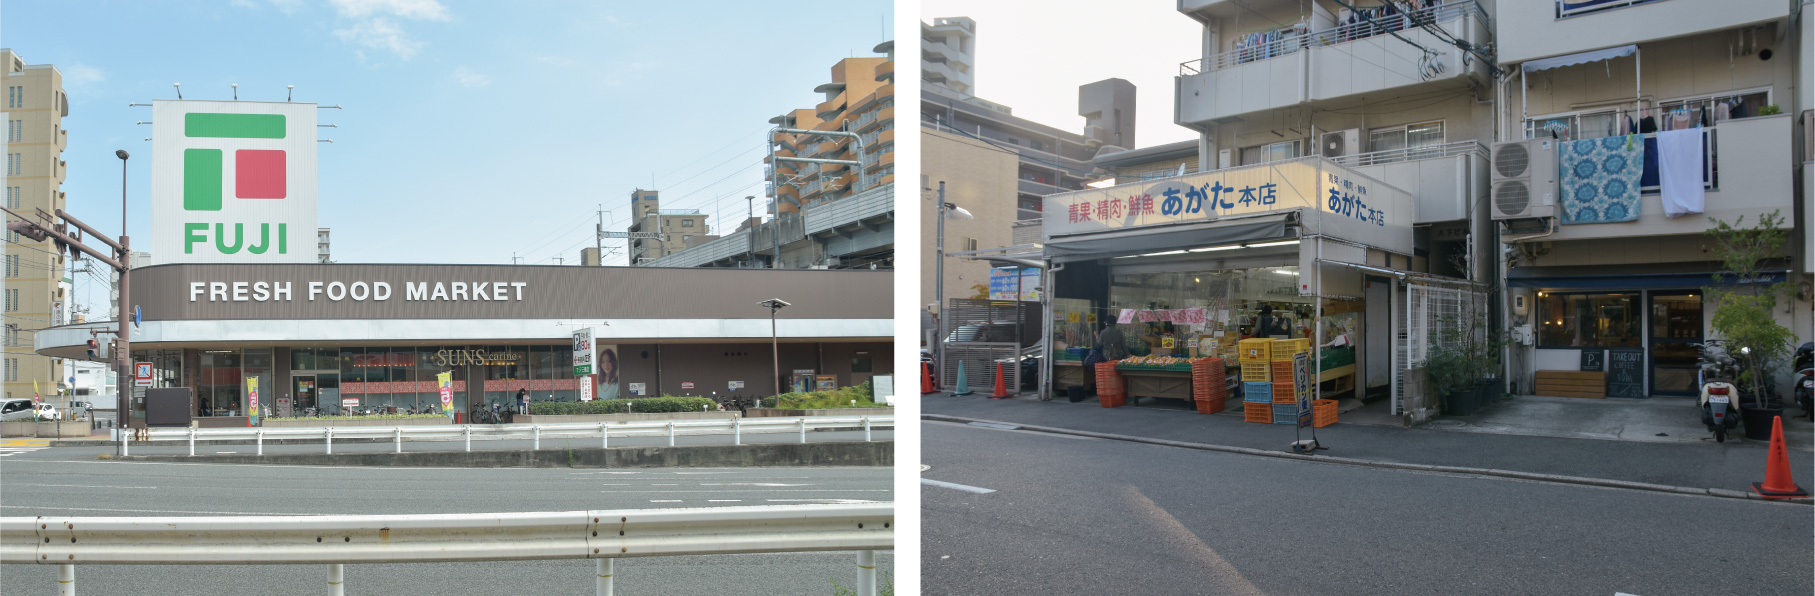 広島市、住みたい街、人気エリア、横川、スーパー、カフェ